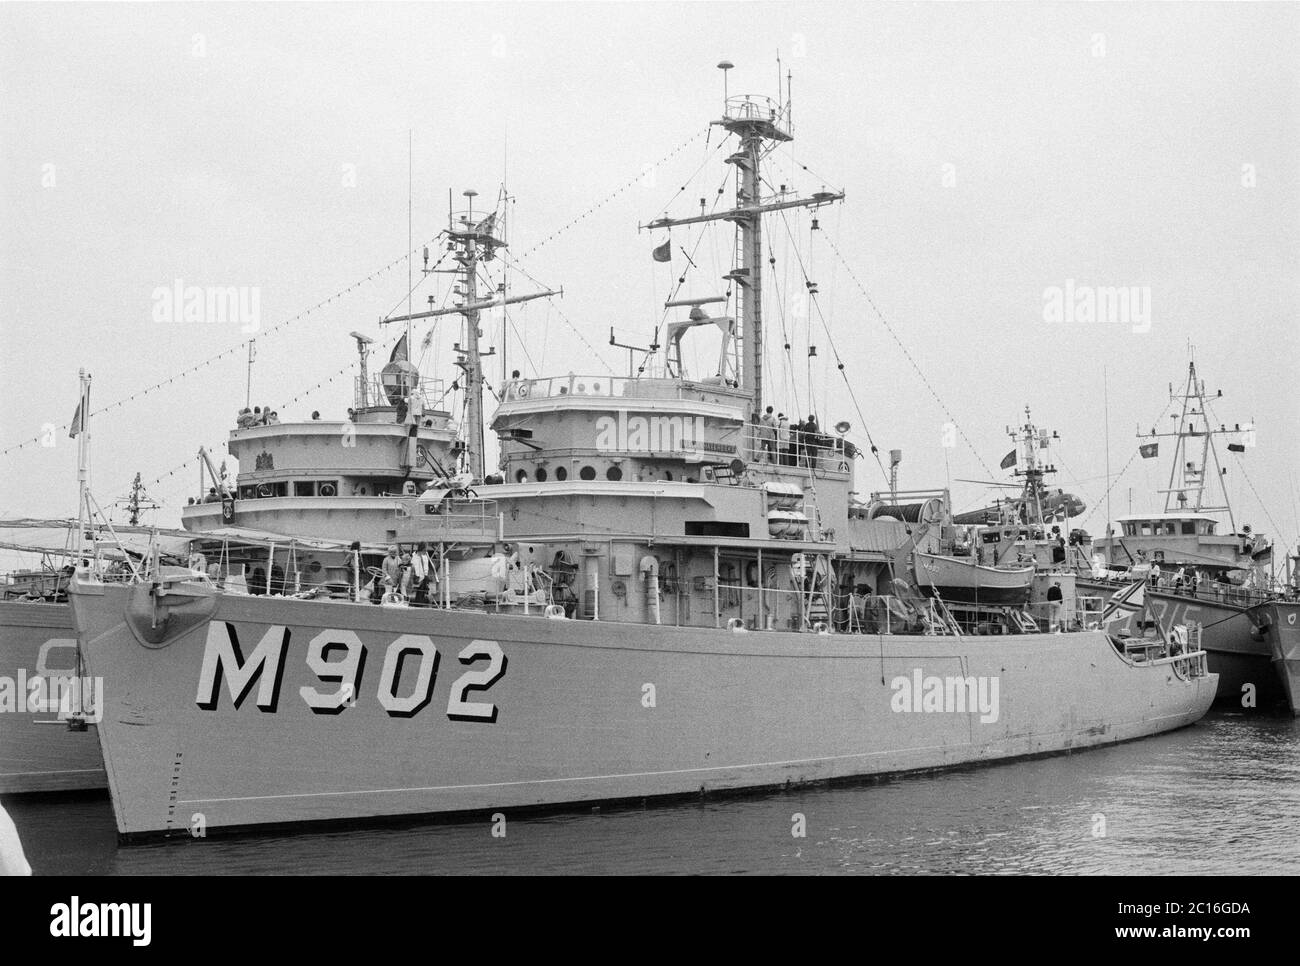 M 902, MSO-Klasse Minenwart Van Haverbeke, Belgische Marine zu Besuch auf Marinebasis, Borkum Island, 22. August 1981, Niedersachsen, Deutschland Stockfoto